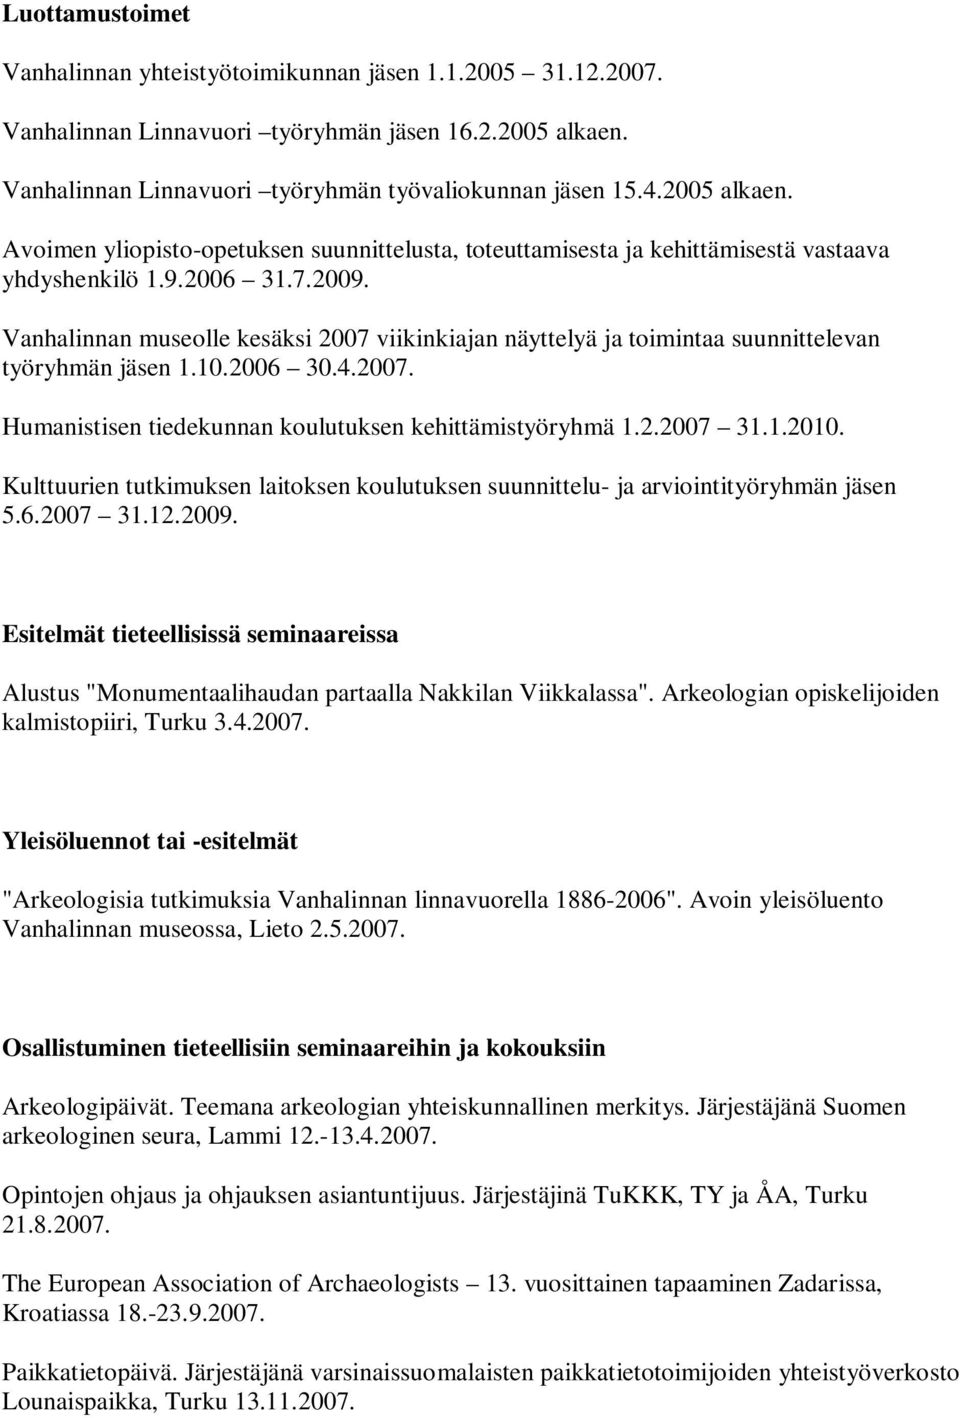 Vanhalinnan museolle kesäksi 2007 viikinkiajan näyttelyä ja toimintaa suunnittelevan työryhmän jäsen 1.10.2006 30.4.2007. Humanistisen tiedekunnan koulutuksen kehittämistyöryhmä 1.2.2007 31.1.2010.